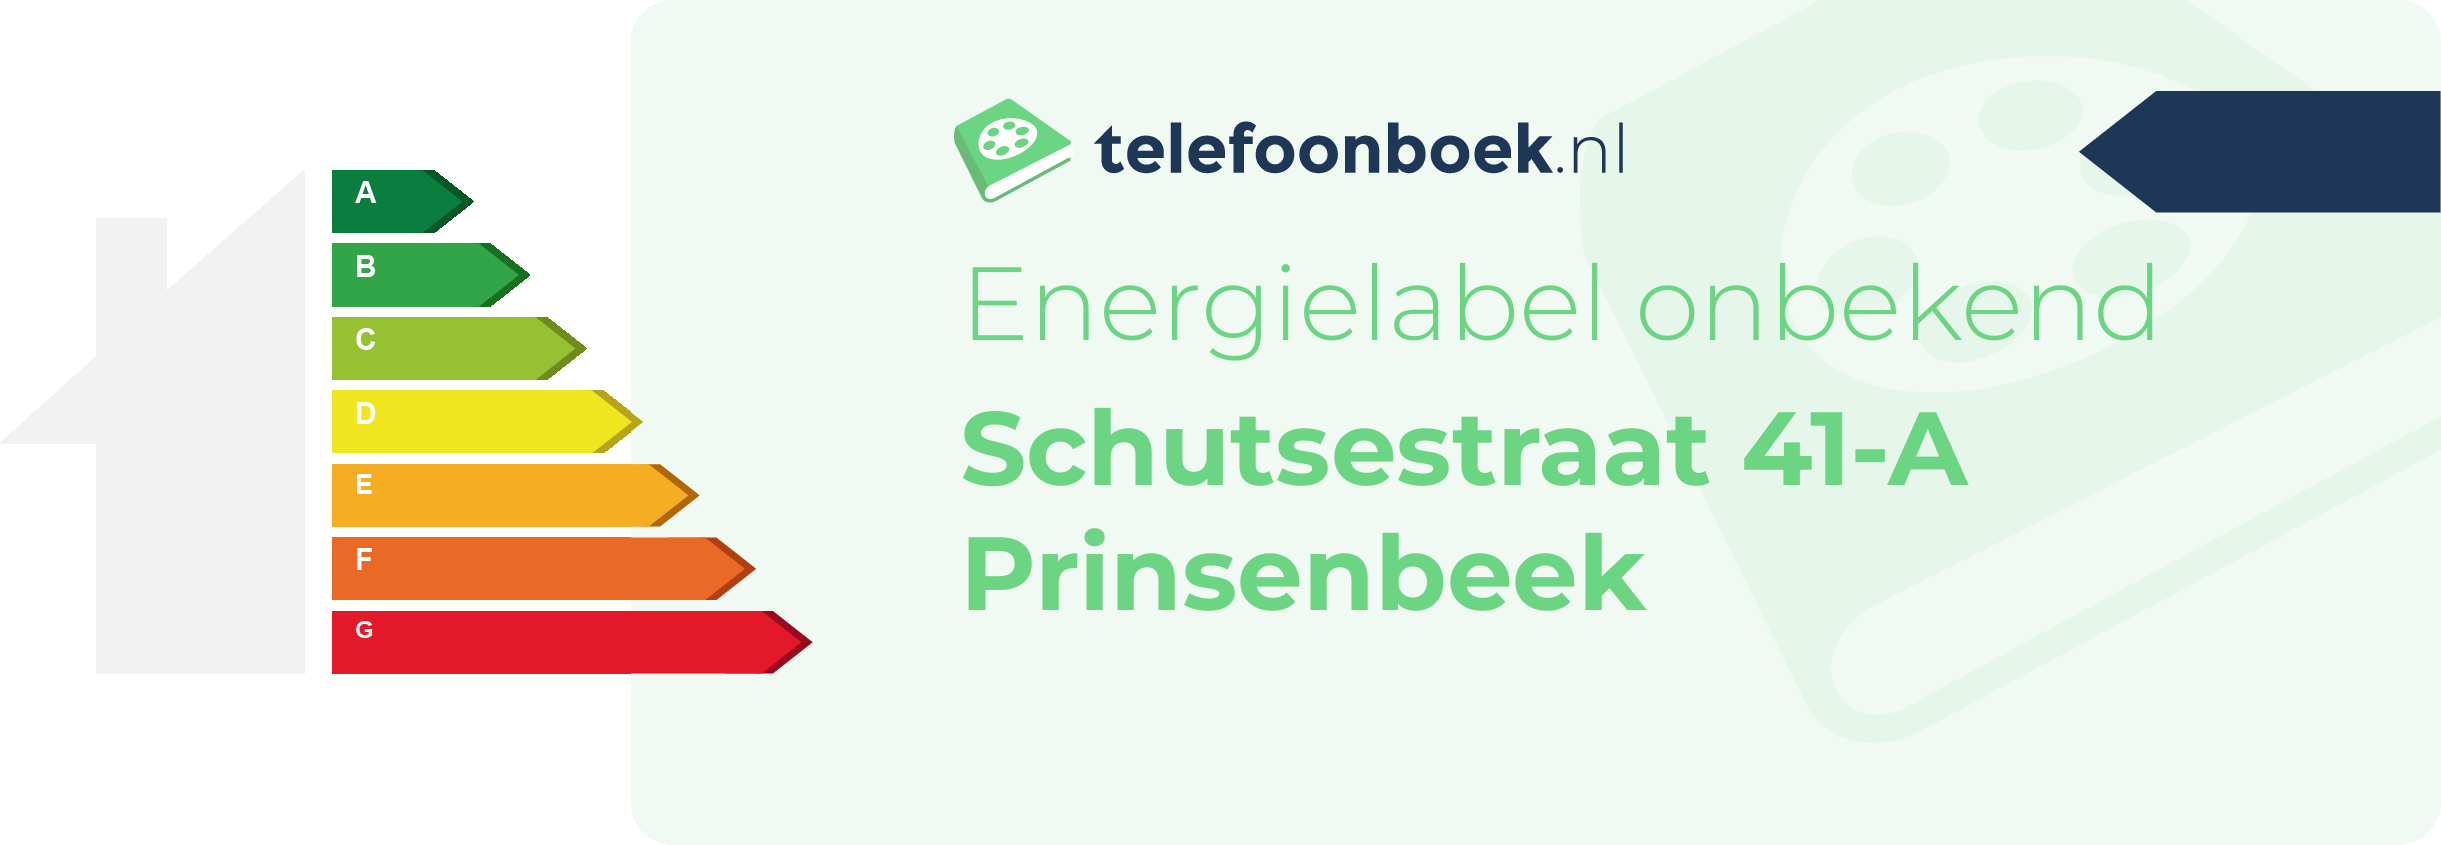 Energielabel Schutsestraat 41-A Prinsenbeek